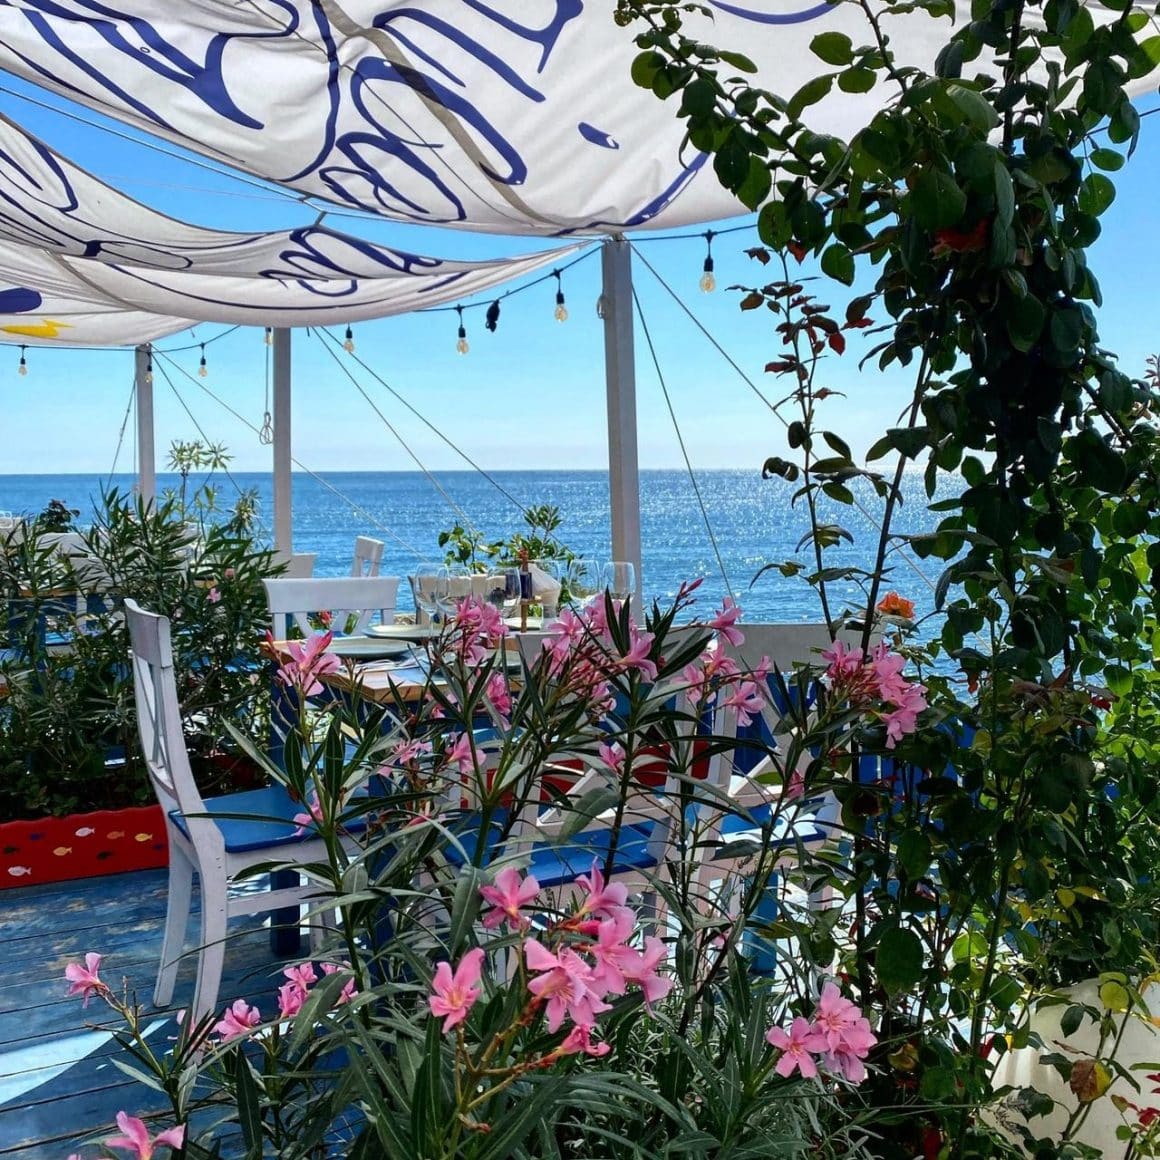 Cherhanale de pe litoralul românesc: Pescăria lui Matei cu mese pe terasa acoperita, flori si in fundal marea